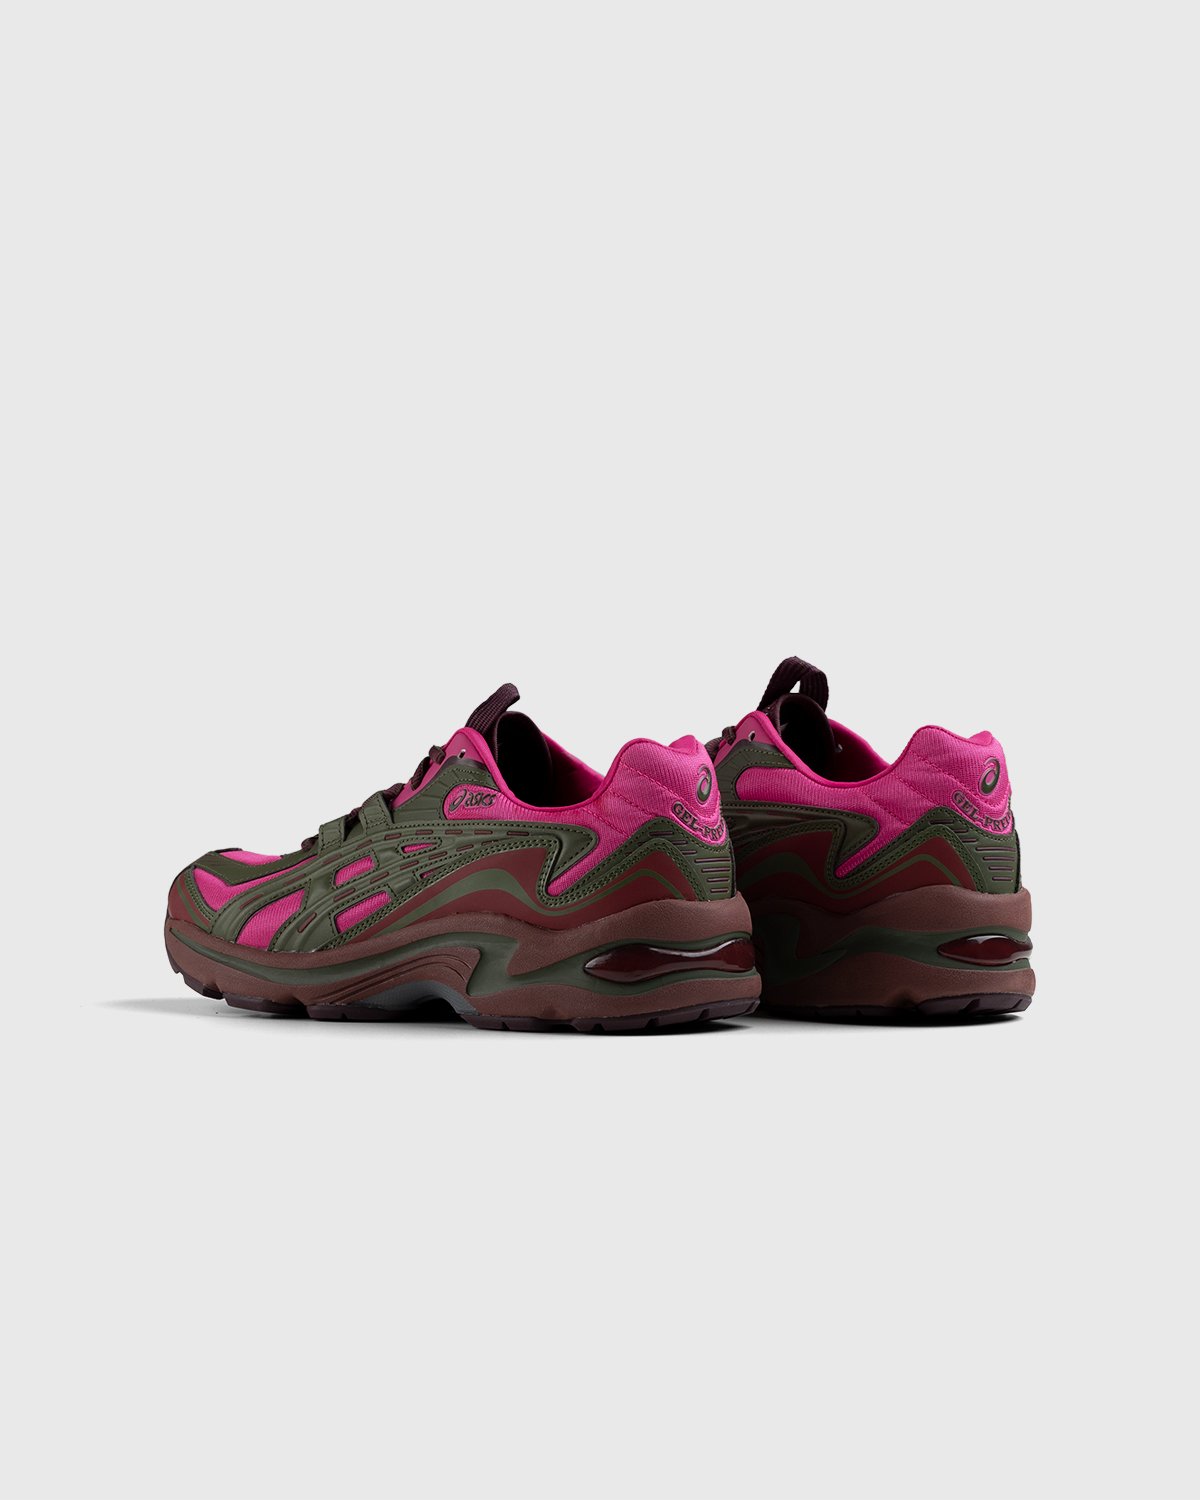 asics - FB1-S Gel-Preleus Pink Rave/Olive Canvas - Footwear - Red - Image 3